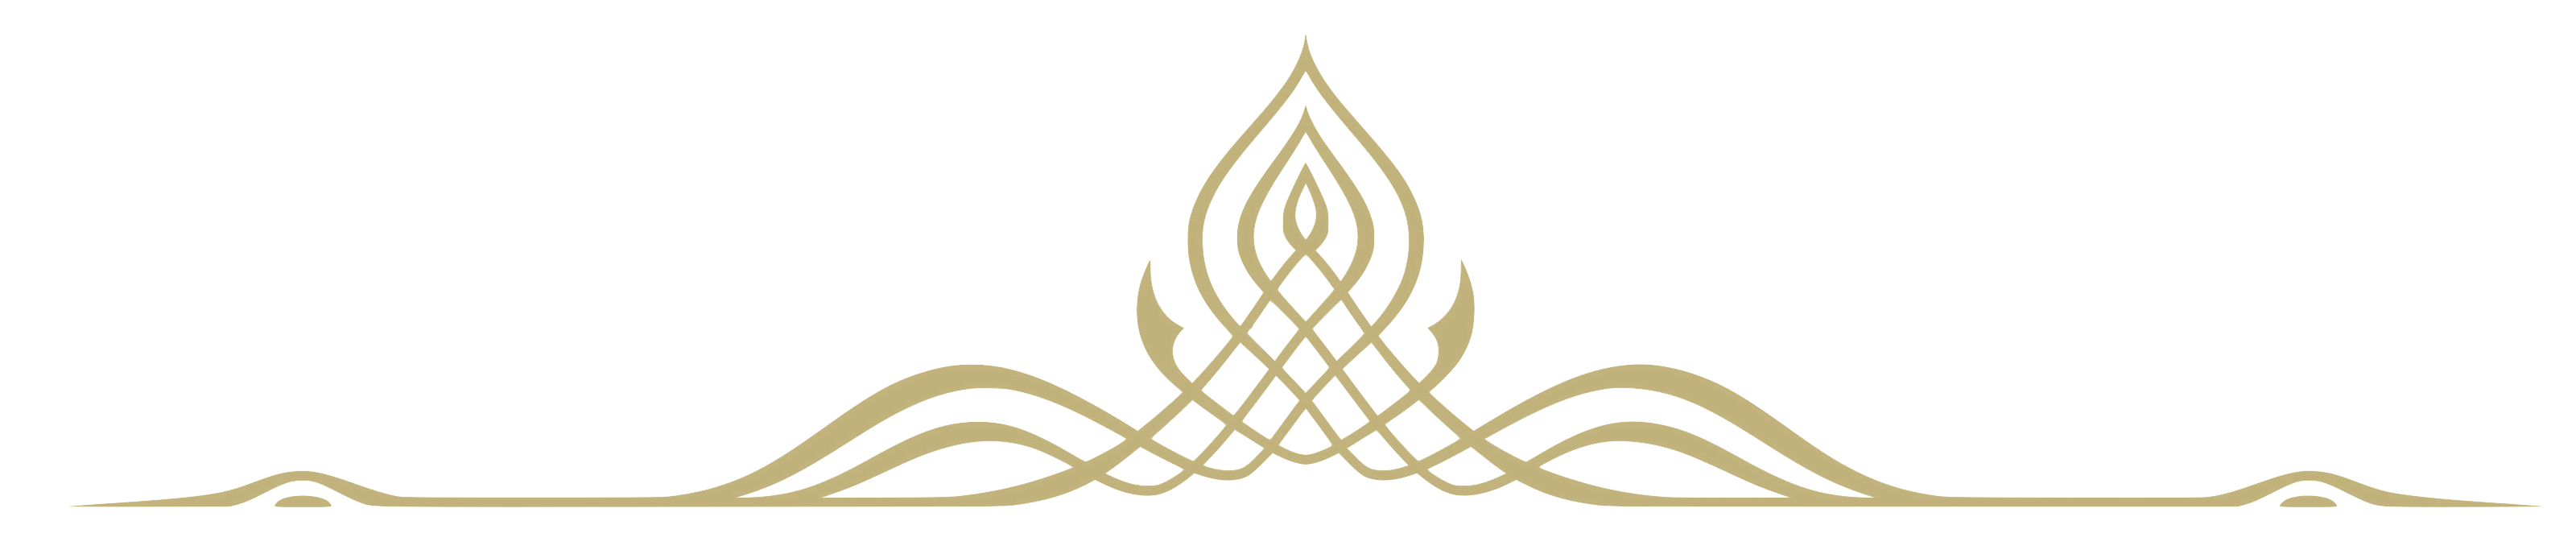 graphic image of gold fluer de lis top